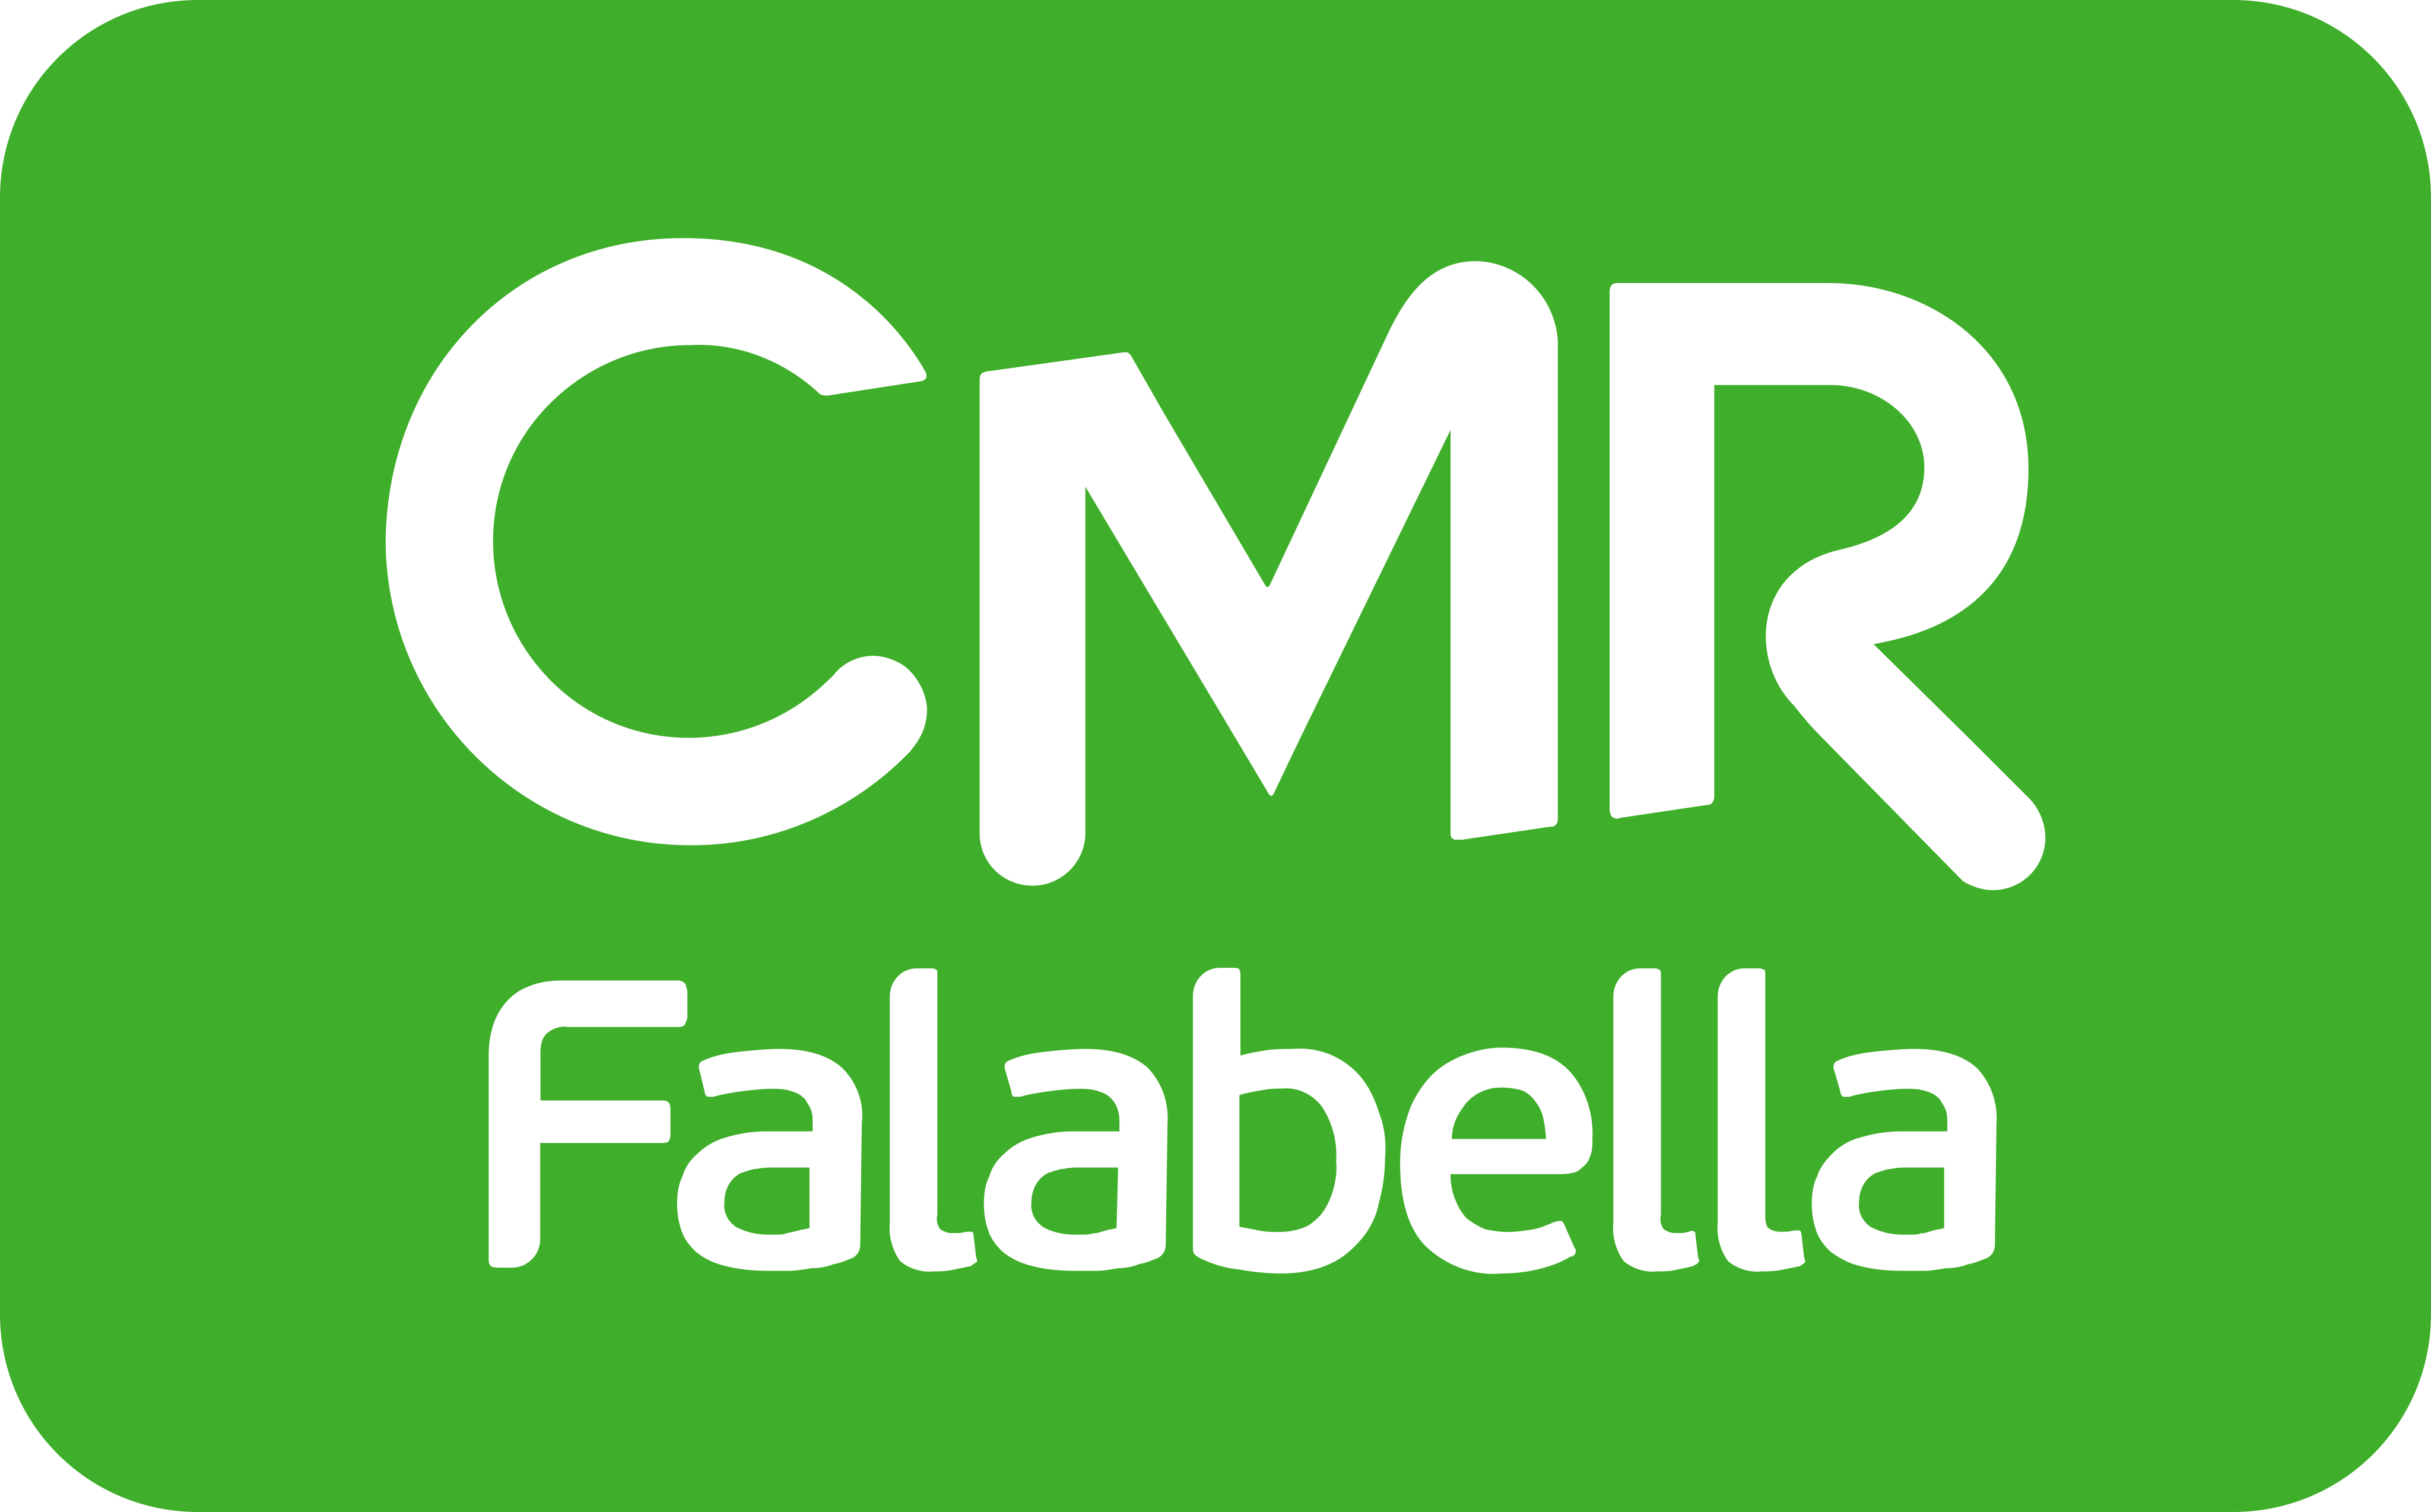 CMR Falabella Logo.